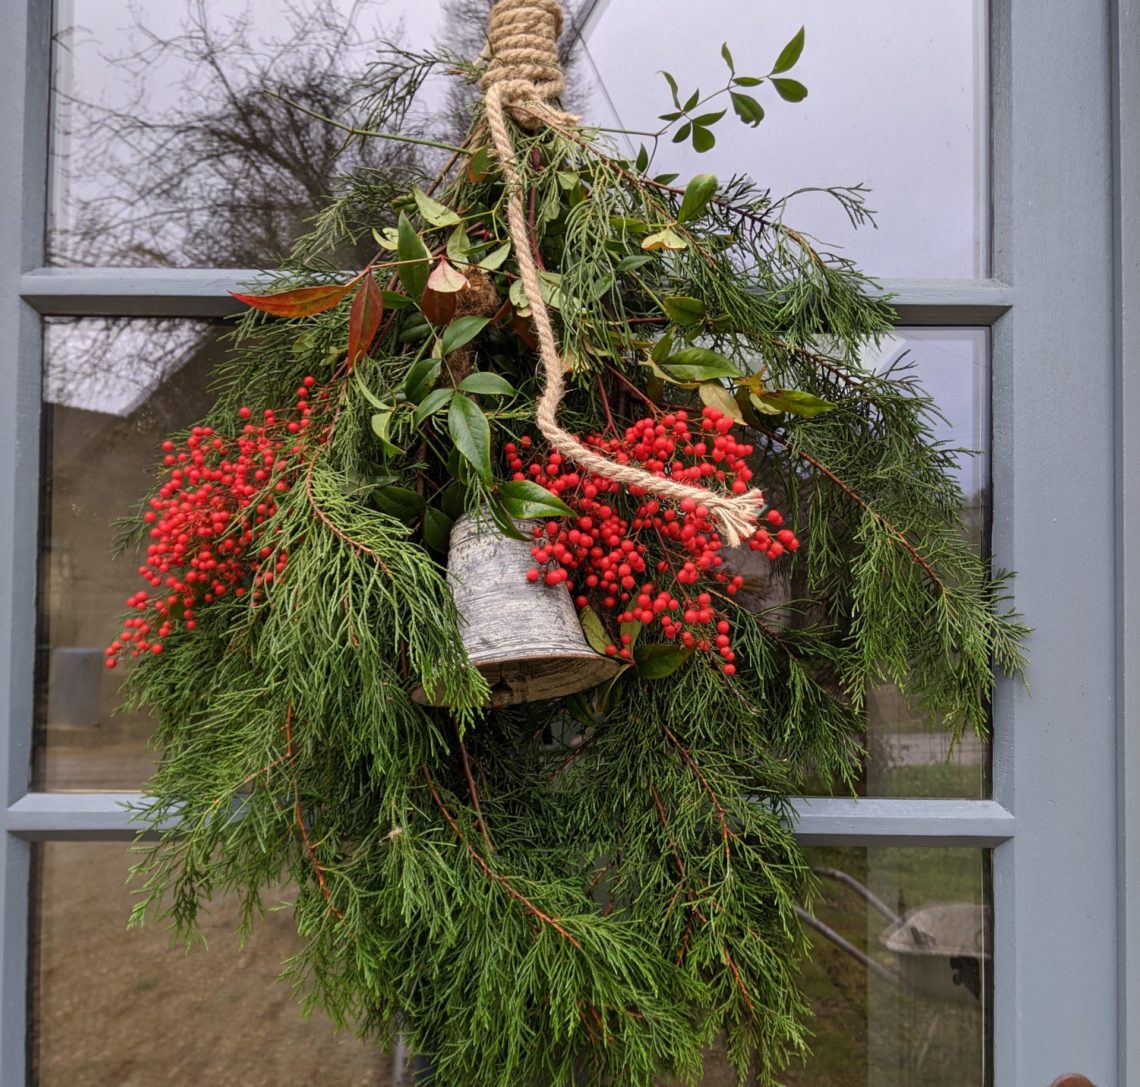 Décoration de Noël sur porte de la maison faite de sapin, corde et cloche